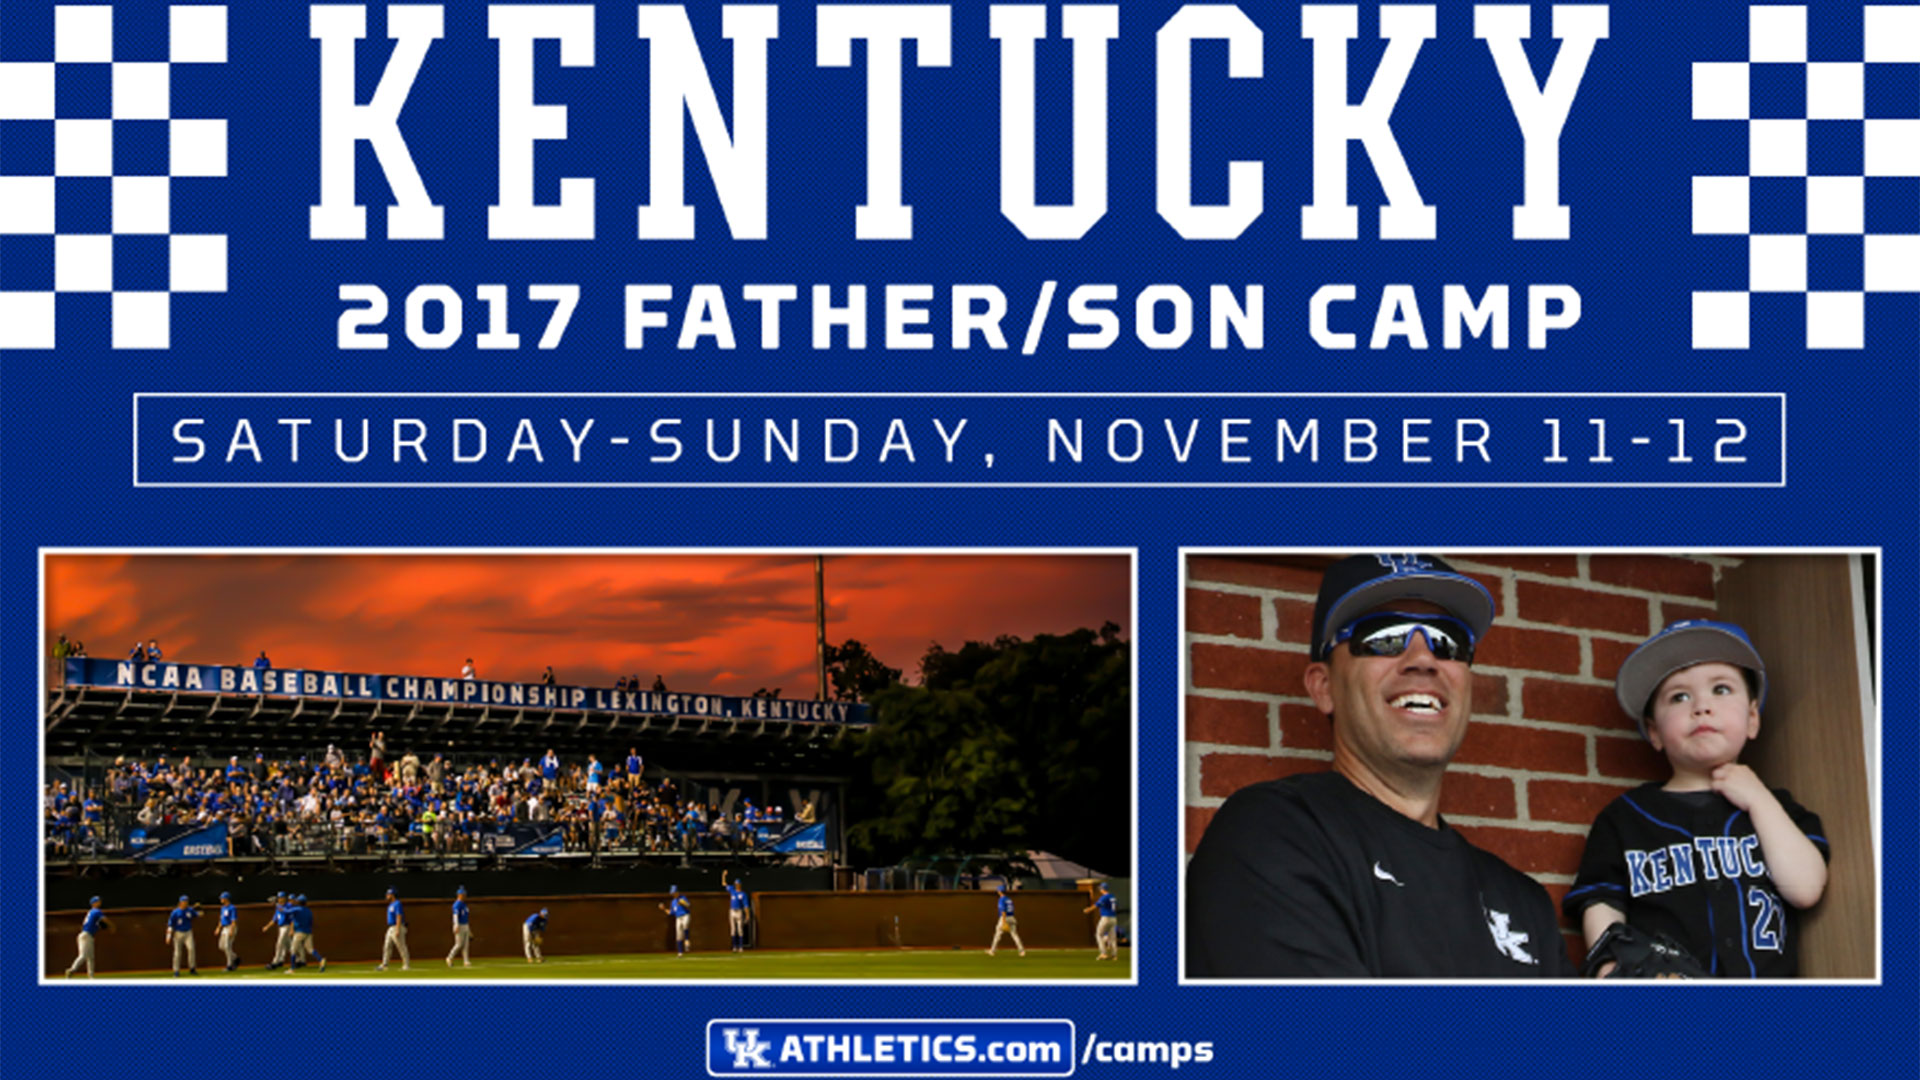 2017 Kentucky Baseball Father/Son Camp